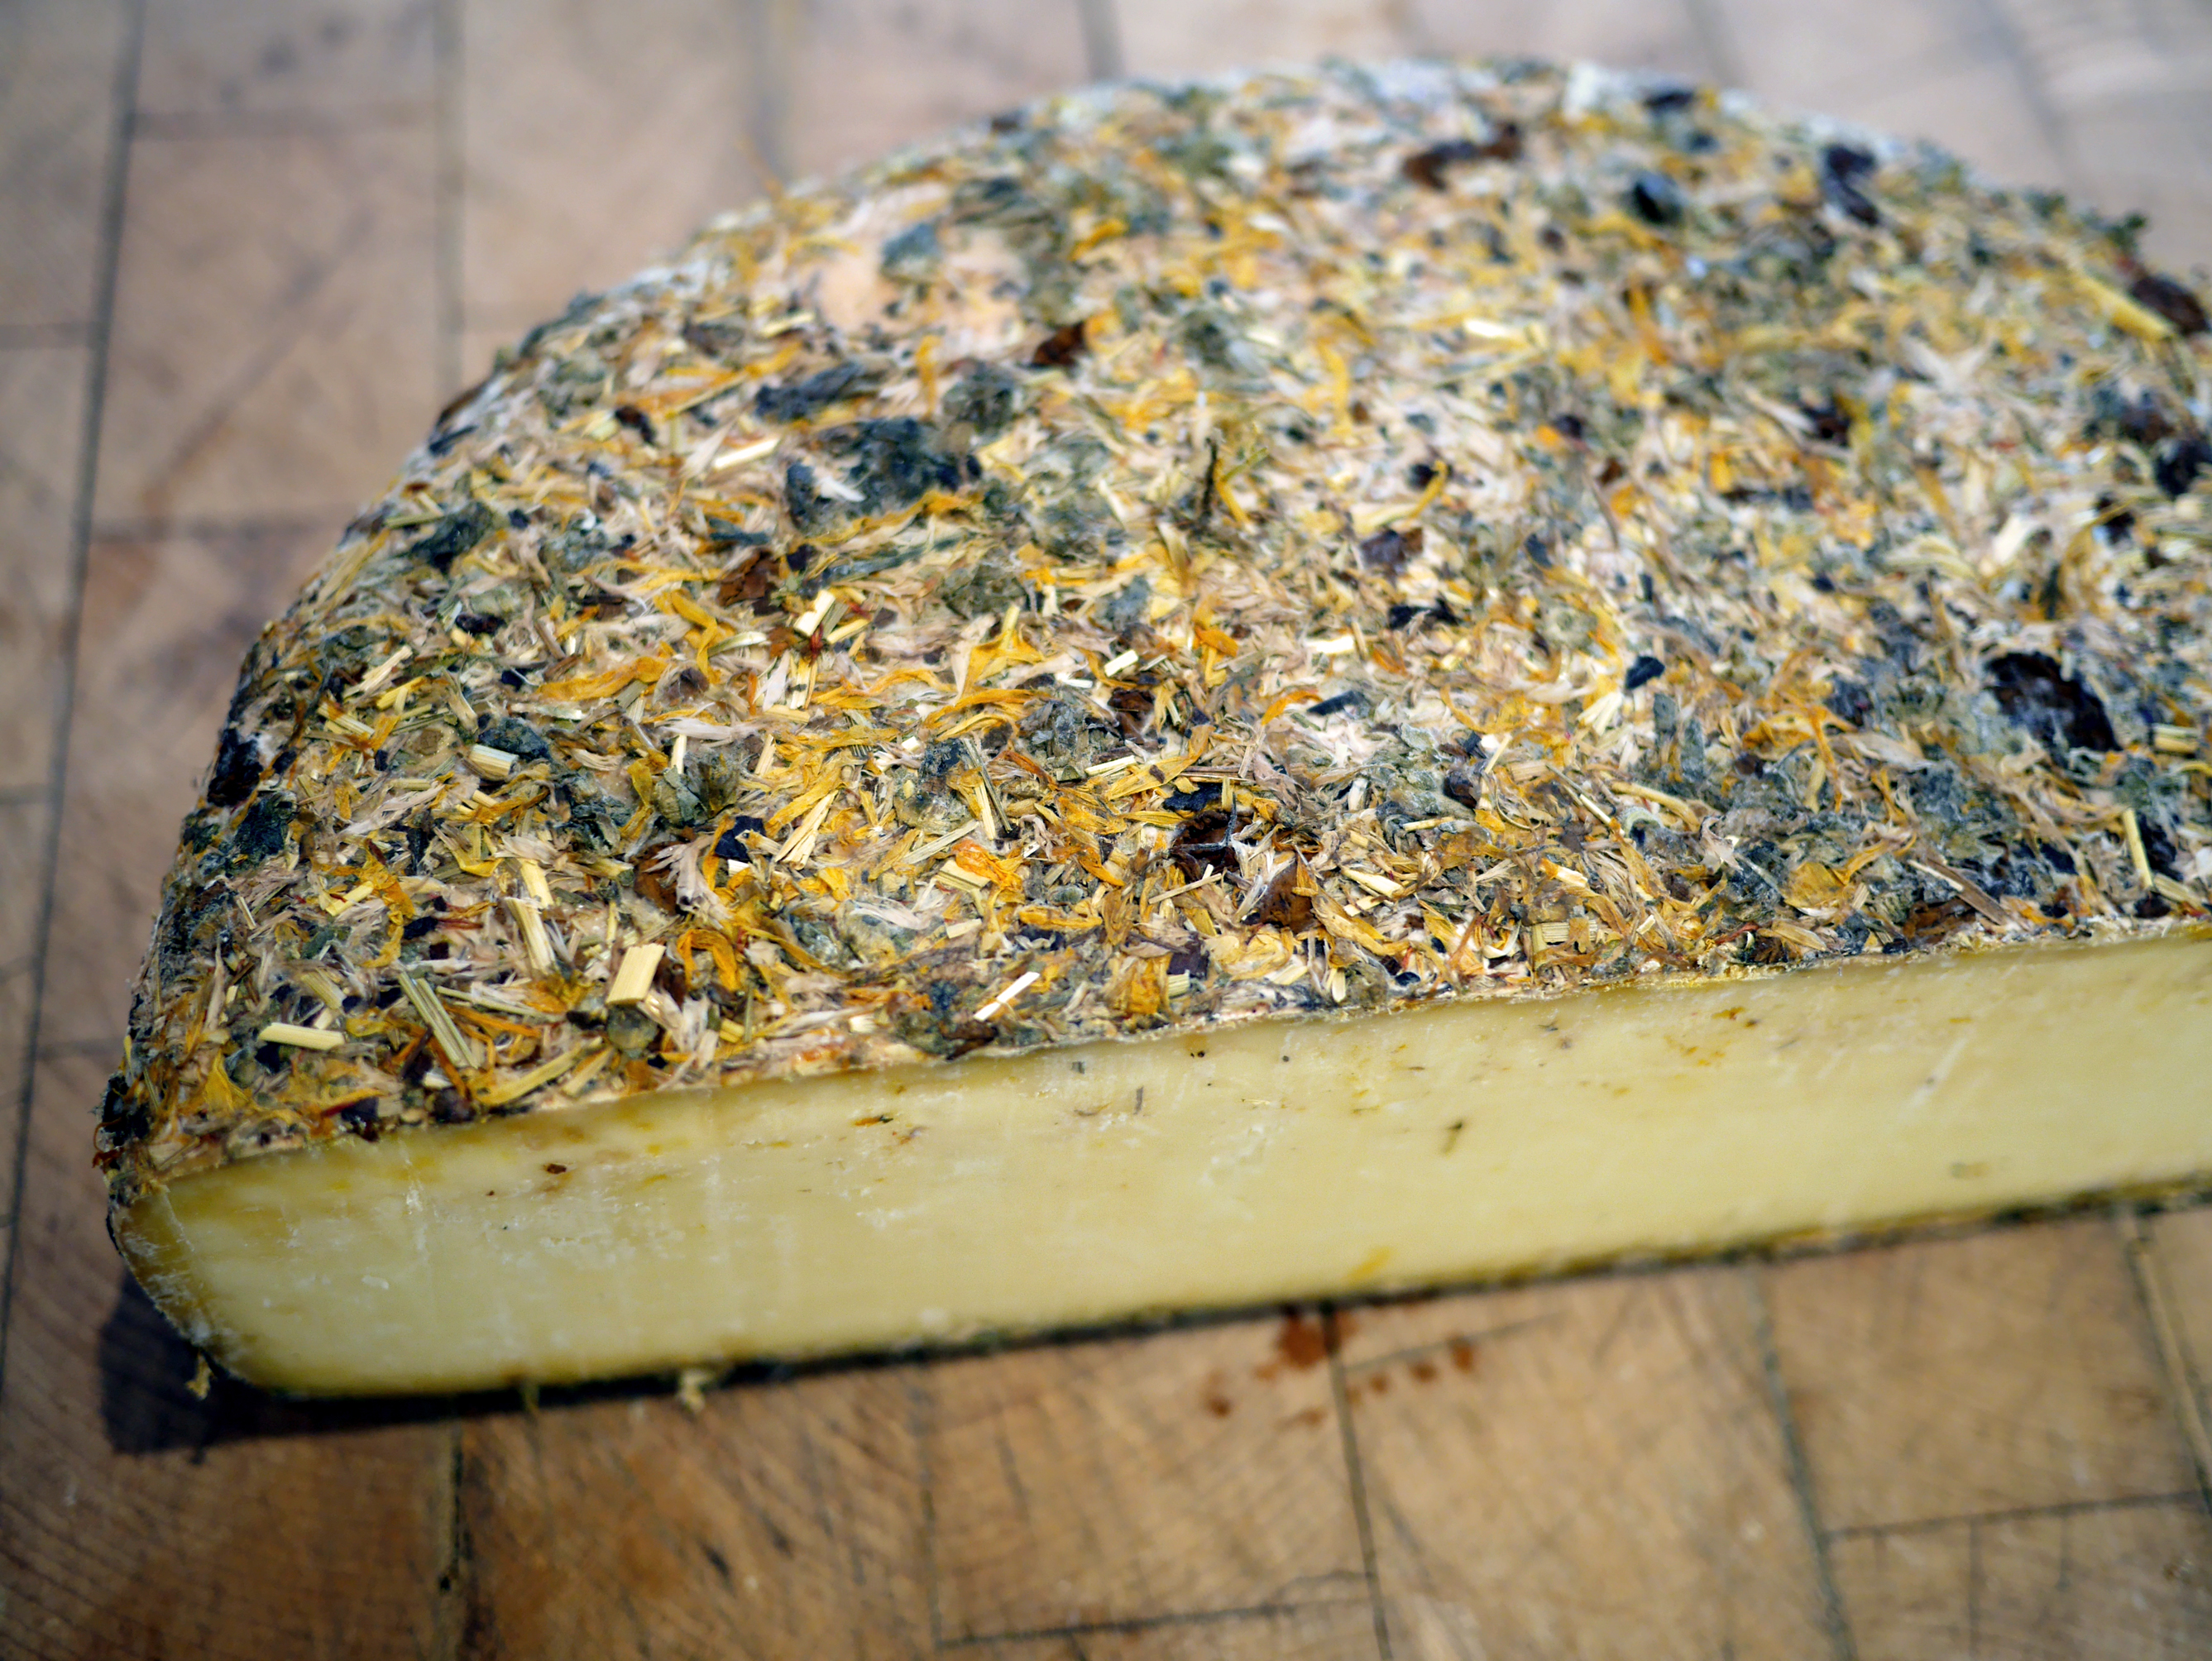 Moutarde de Dijon - La fromagerie Hamel